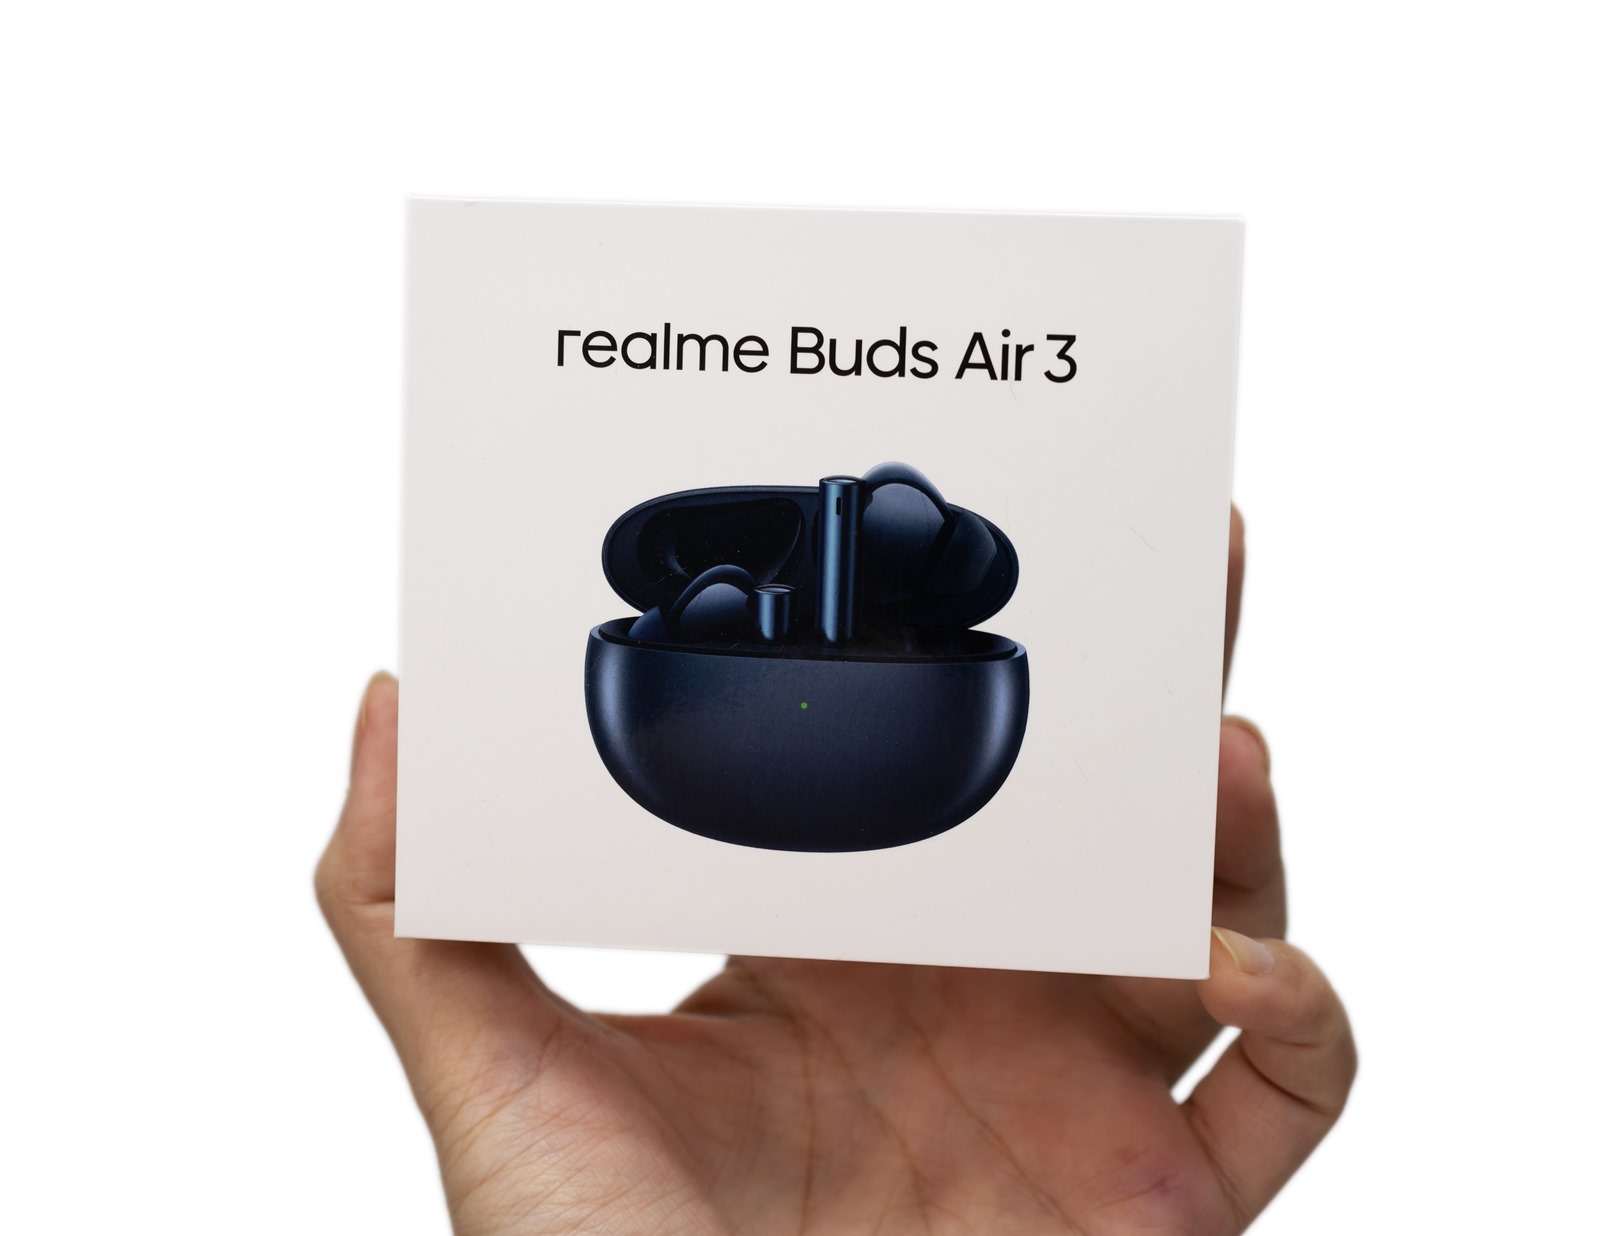 降噪強電力強功能完整 realme Buds Air 3 挑戰性價比最強降噪真無線藍牙耳機 @3C 達人廖阿輝